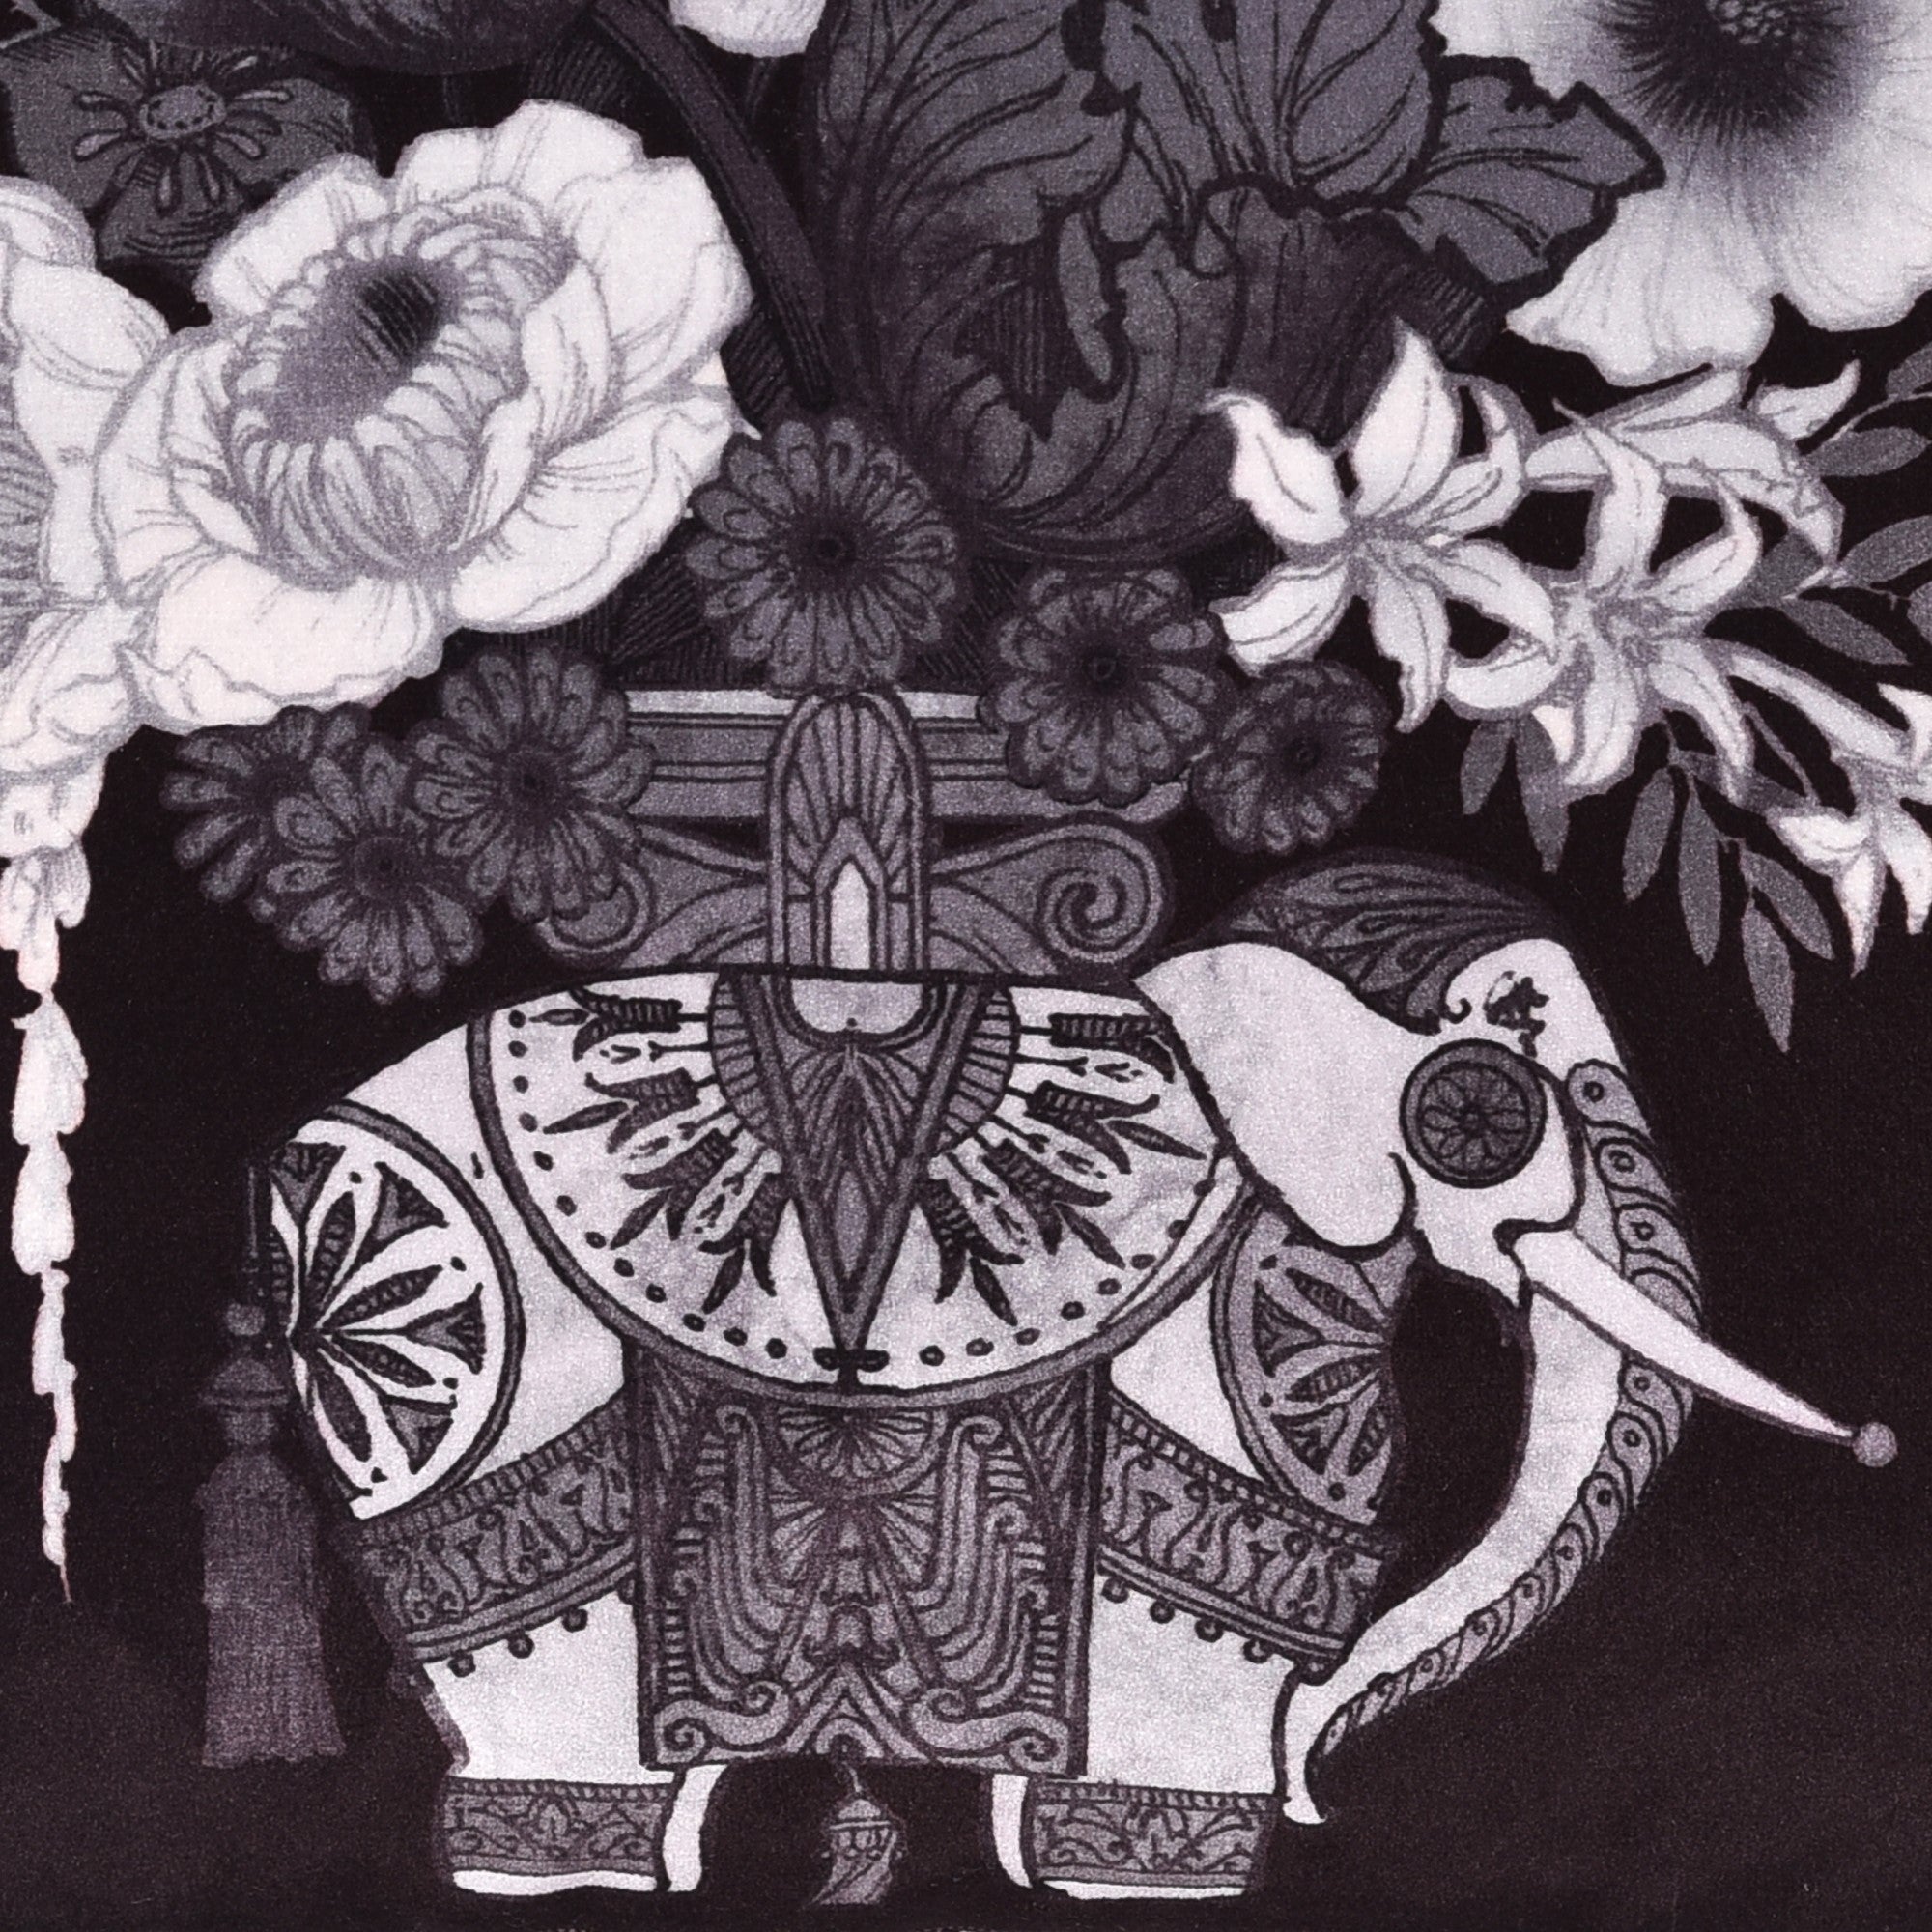 Generou Elephant Cushion by Laurence Llewelyn-Bowen in Black/White 43 x 43cm - Cushion - Laurence Llewelyn-Bowen